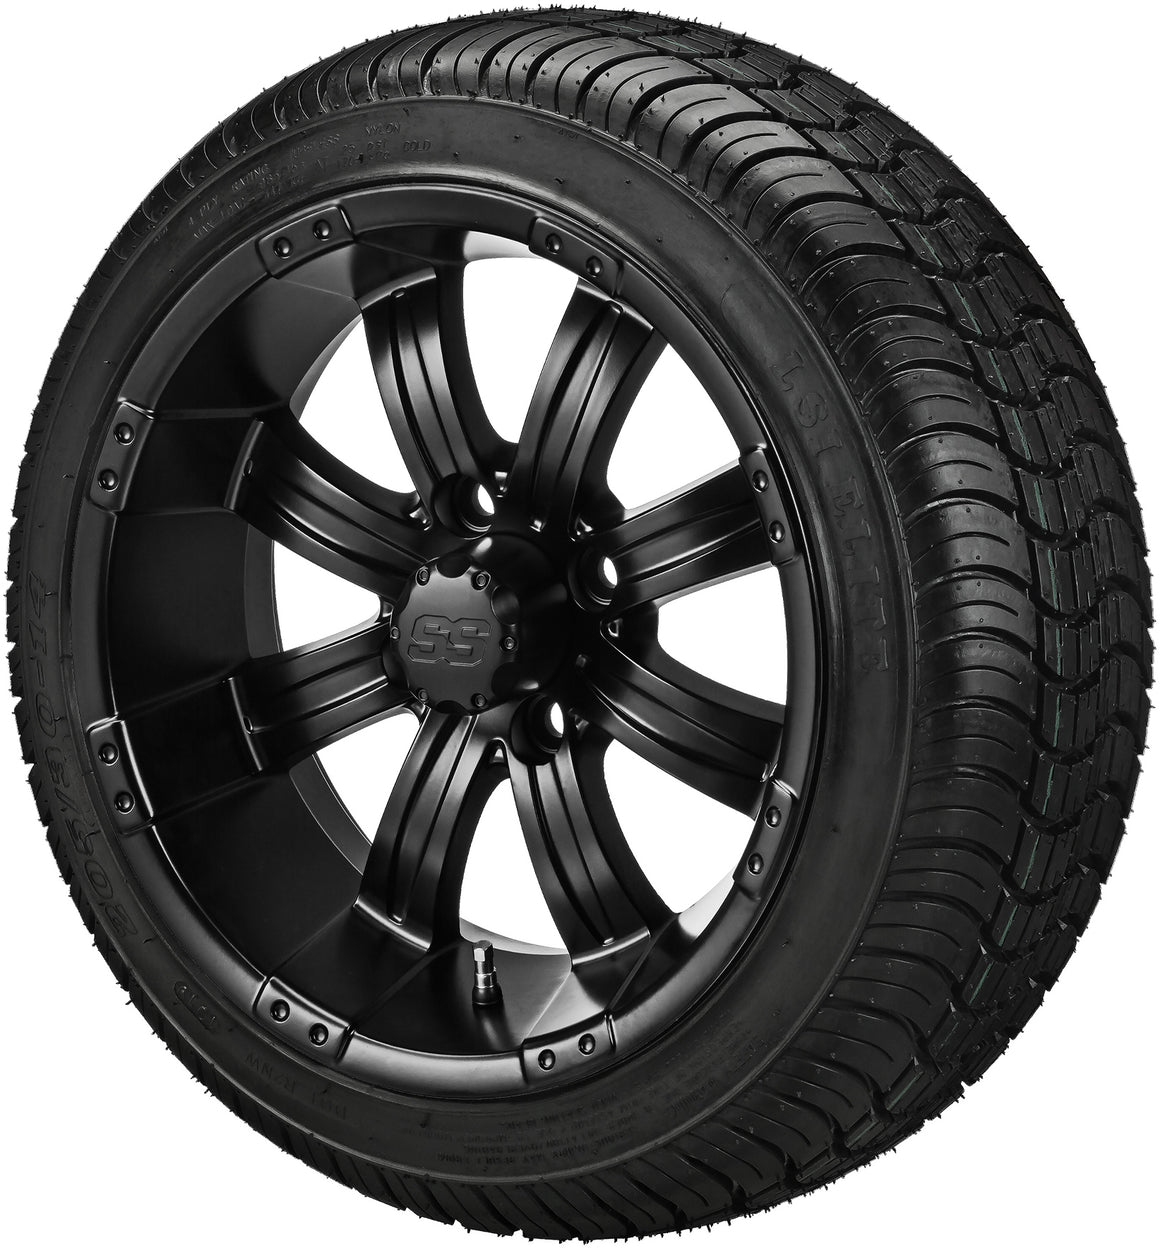 15" Casino Matte Black on 205/35R15 LSI Elite Radial Tires